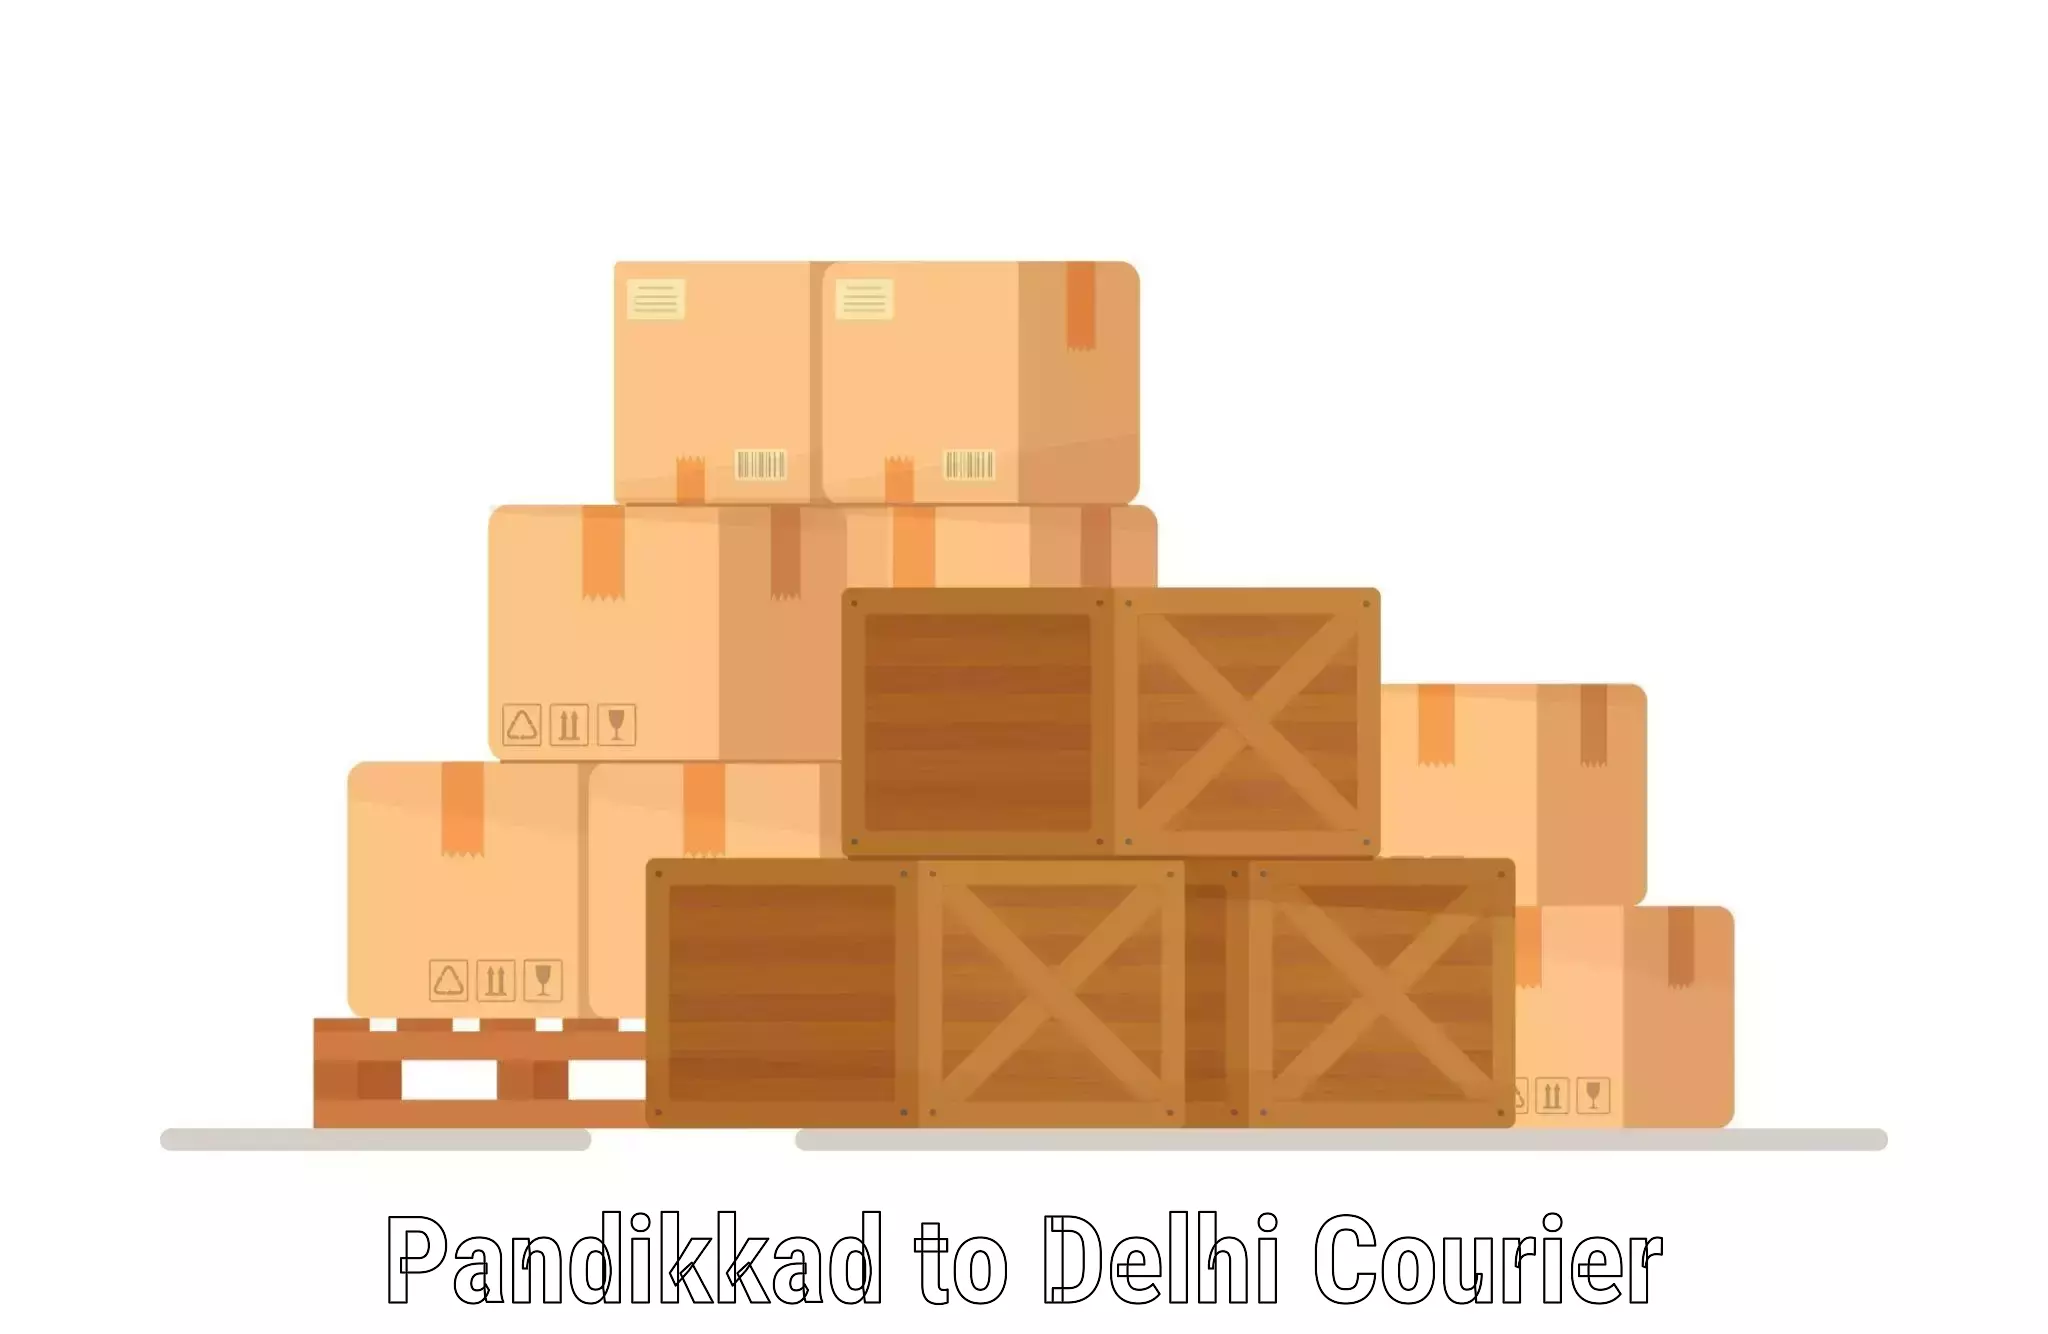 Door-to-door shipping Pandikkad to Naraina Industrial Estate